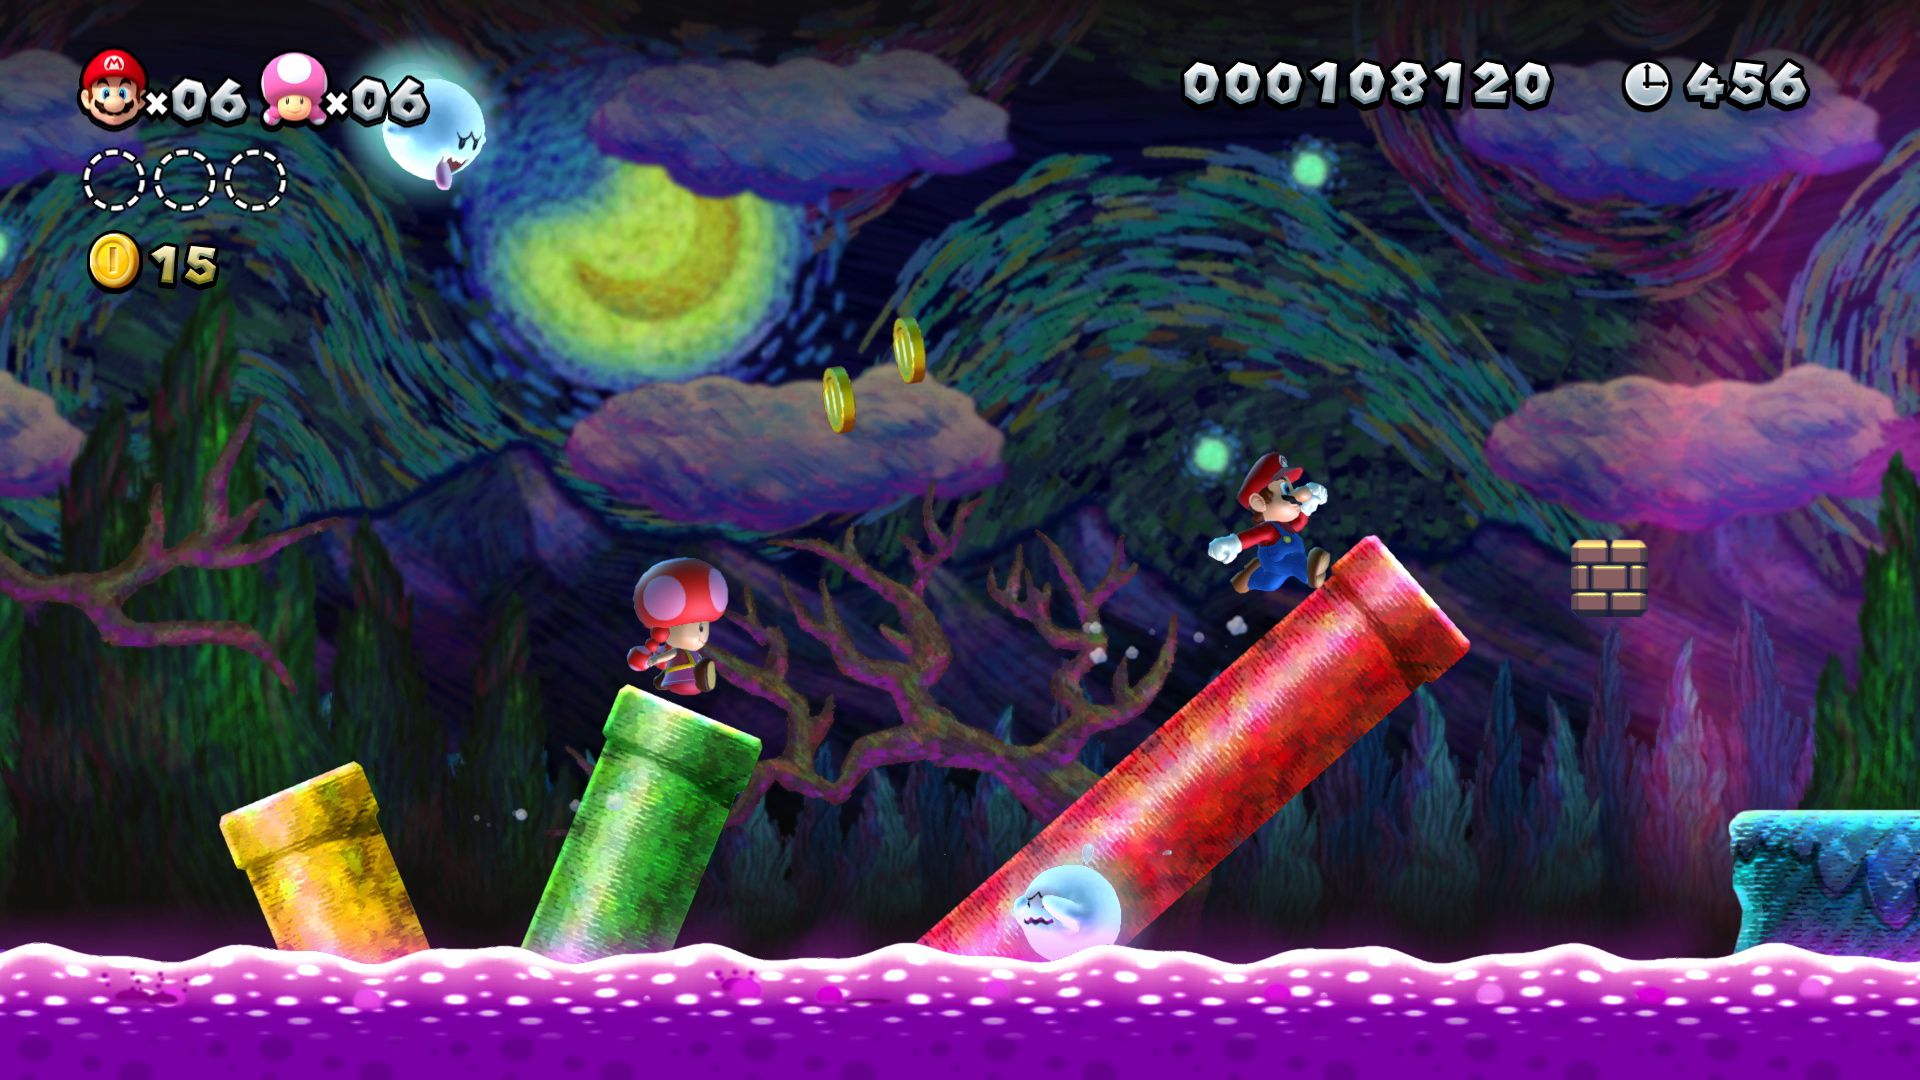 Mario et Toadette courent à travers un niveau effrayant dans New Super Mario Bros. U Deluxe pour Nintendo Switch